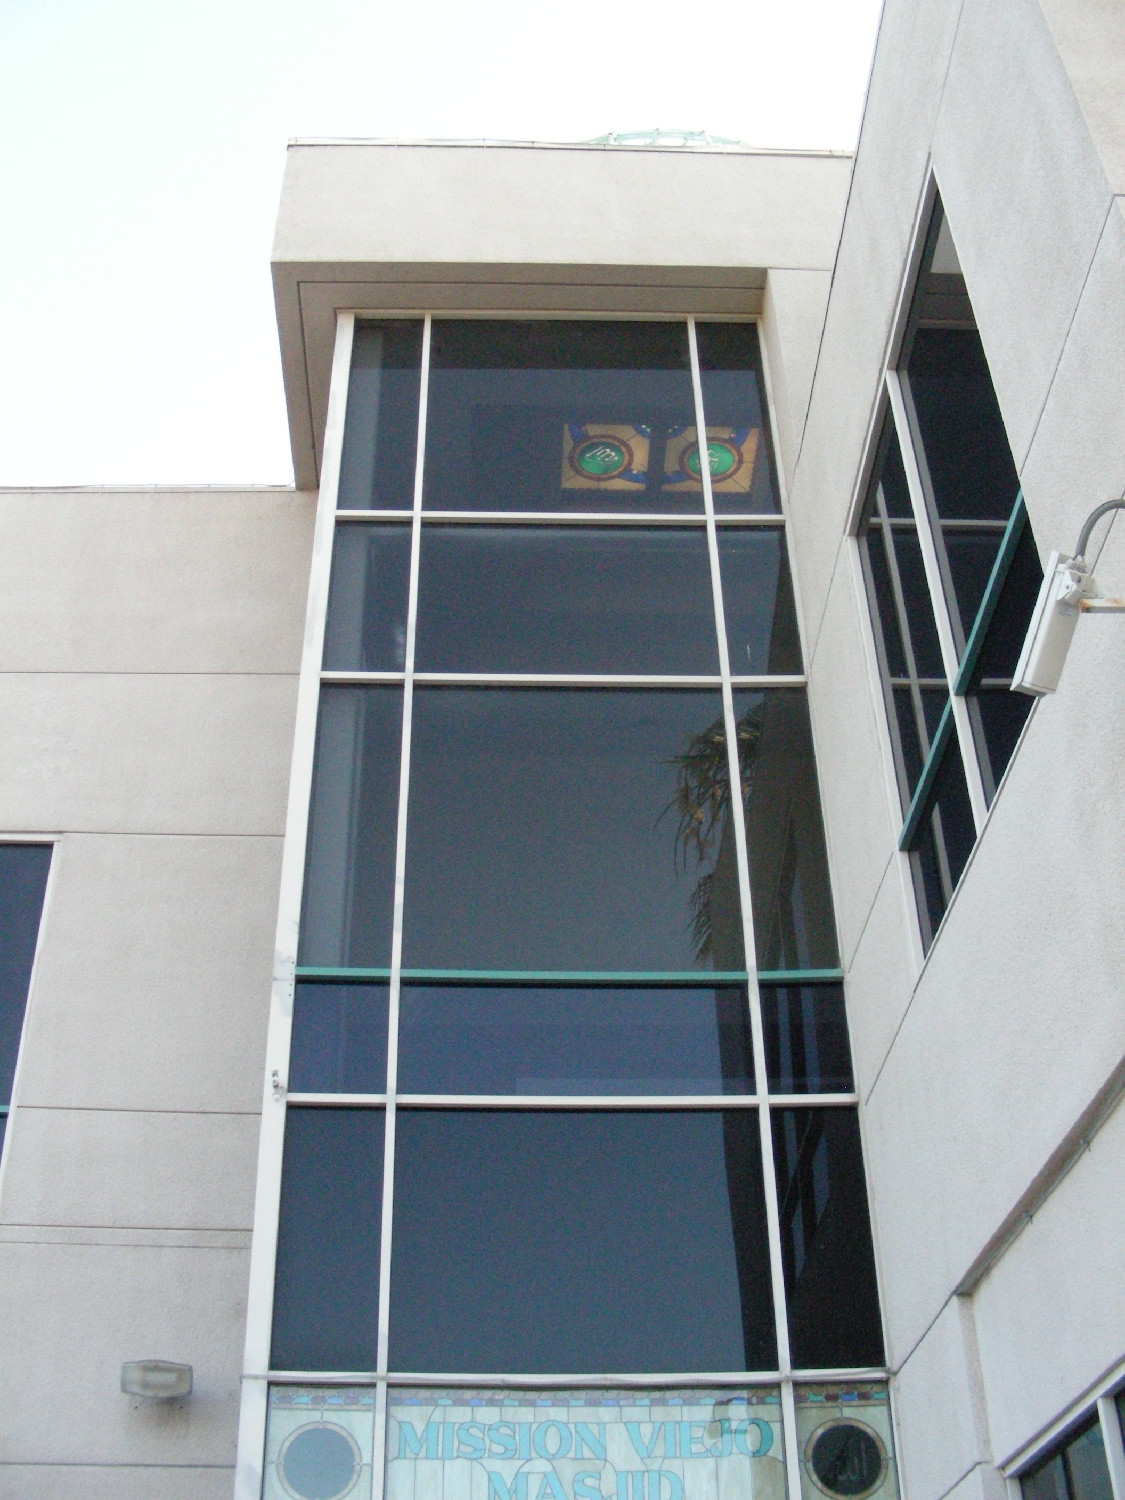 Exterior, windows above entrance